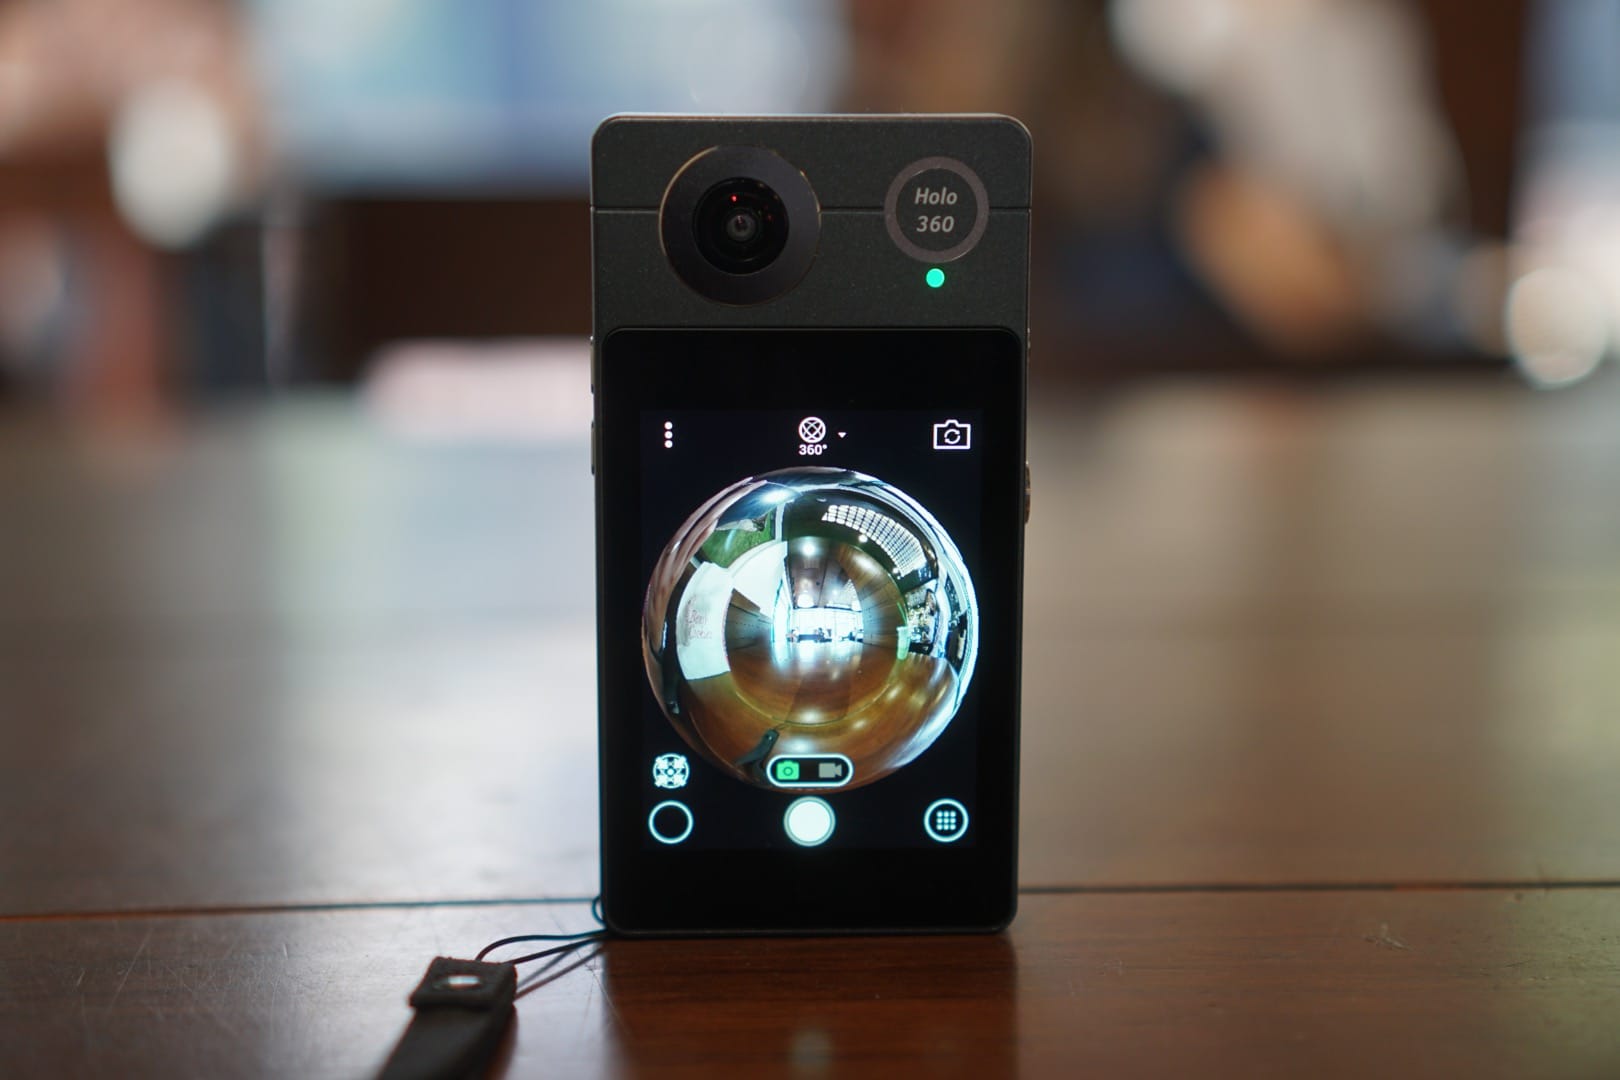 รีวิว Acer Holo360 กล้อง 360 องศา ที่ดันเป็นสมาร์ทโฟนได้เต็มตัว (โทรได้ด้วย!)